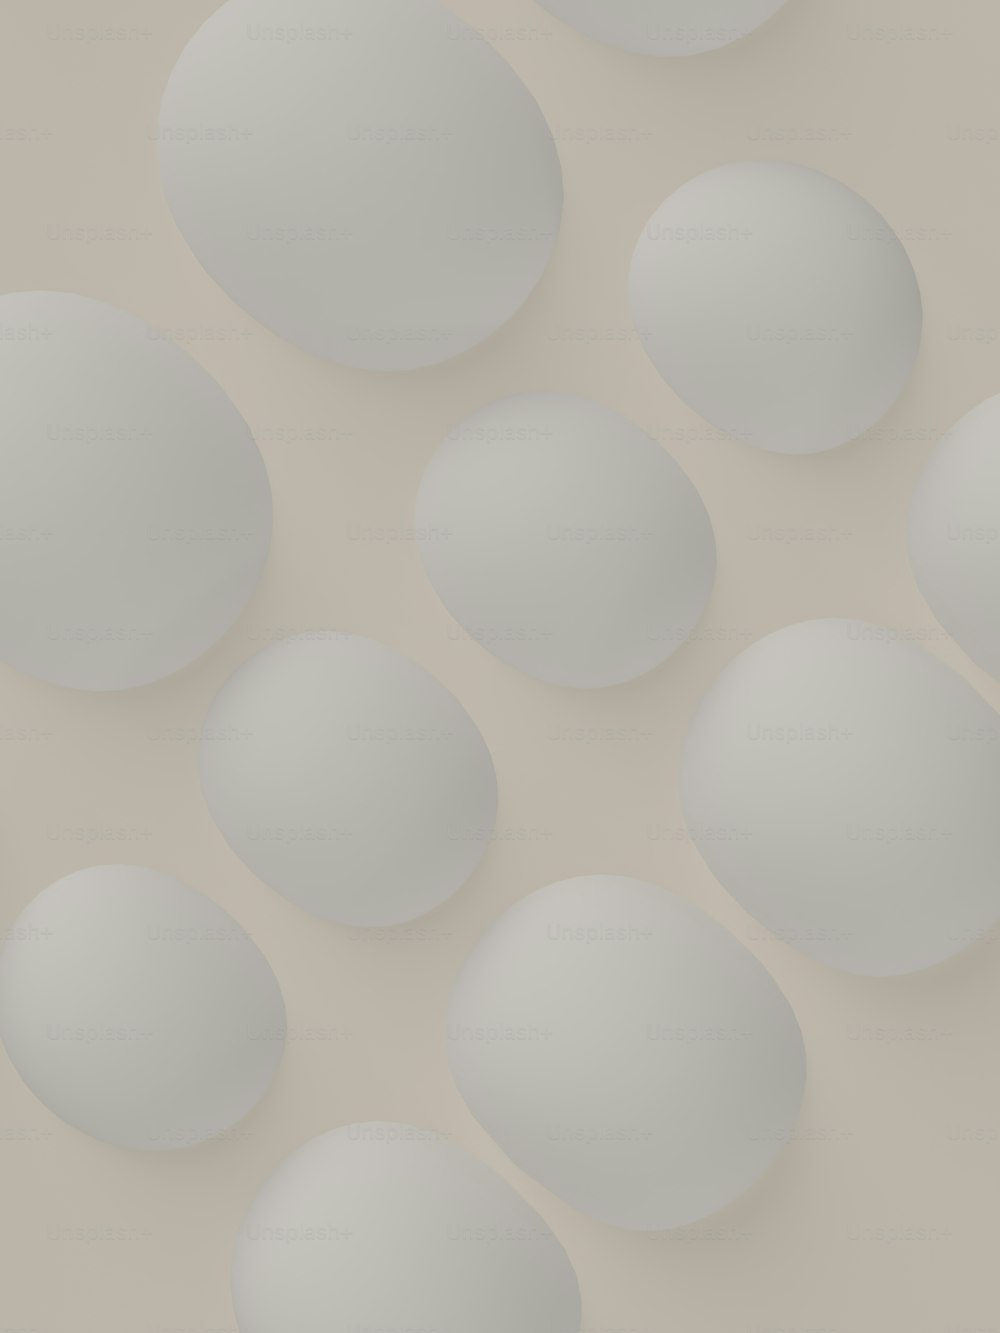 ein Haufen weißer Eier auf einem Tisch